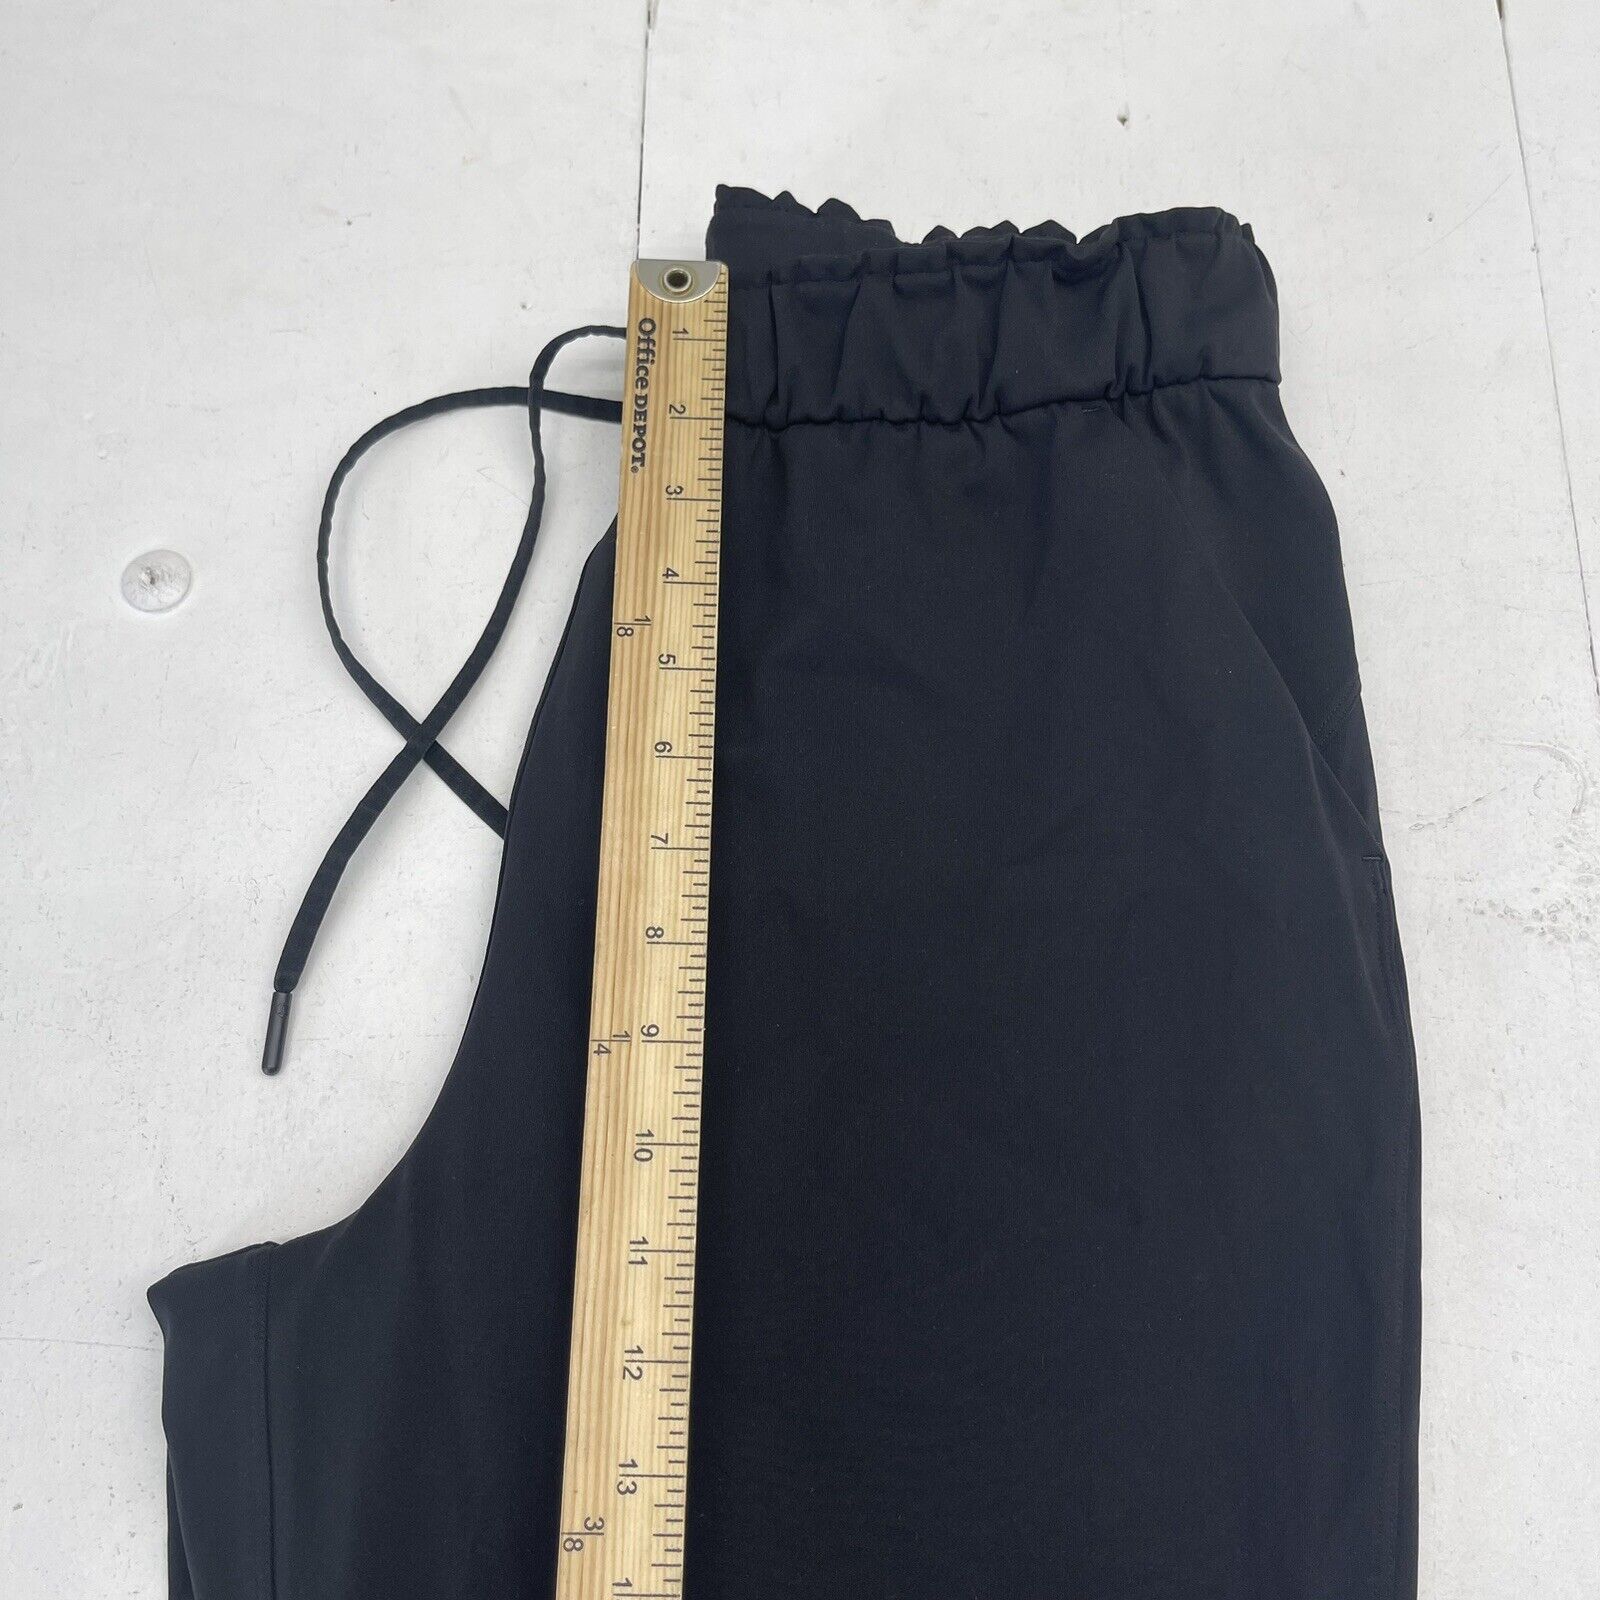 Lululemon Keep Moving Pant 7/8 High-Rise, Size 12, Black